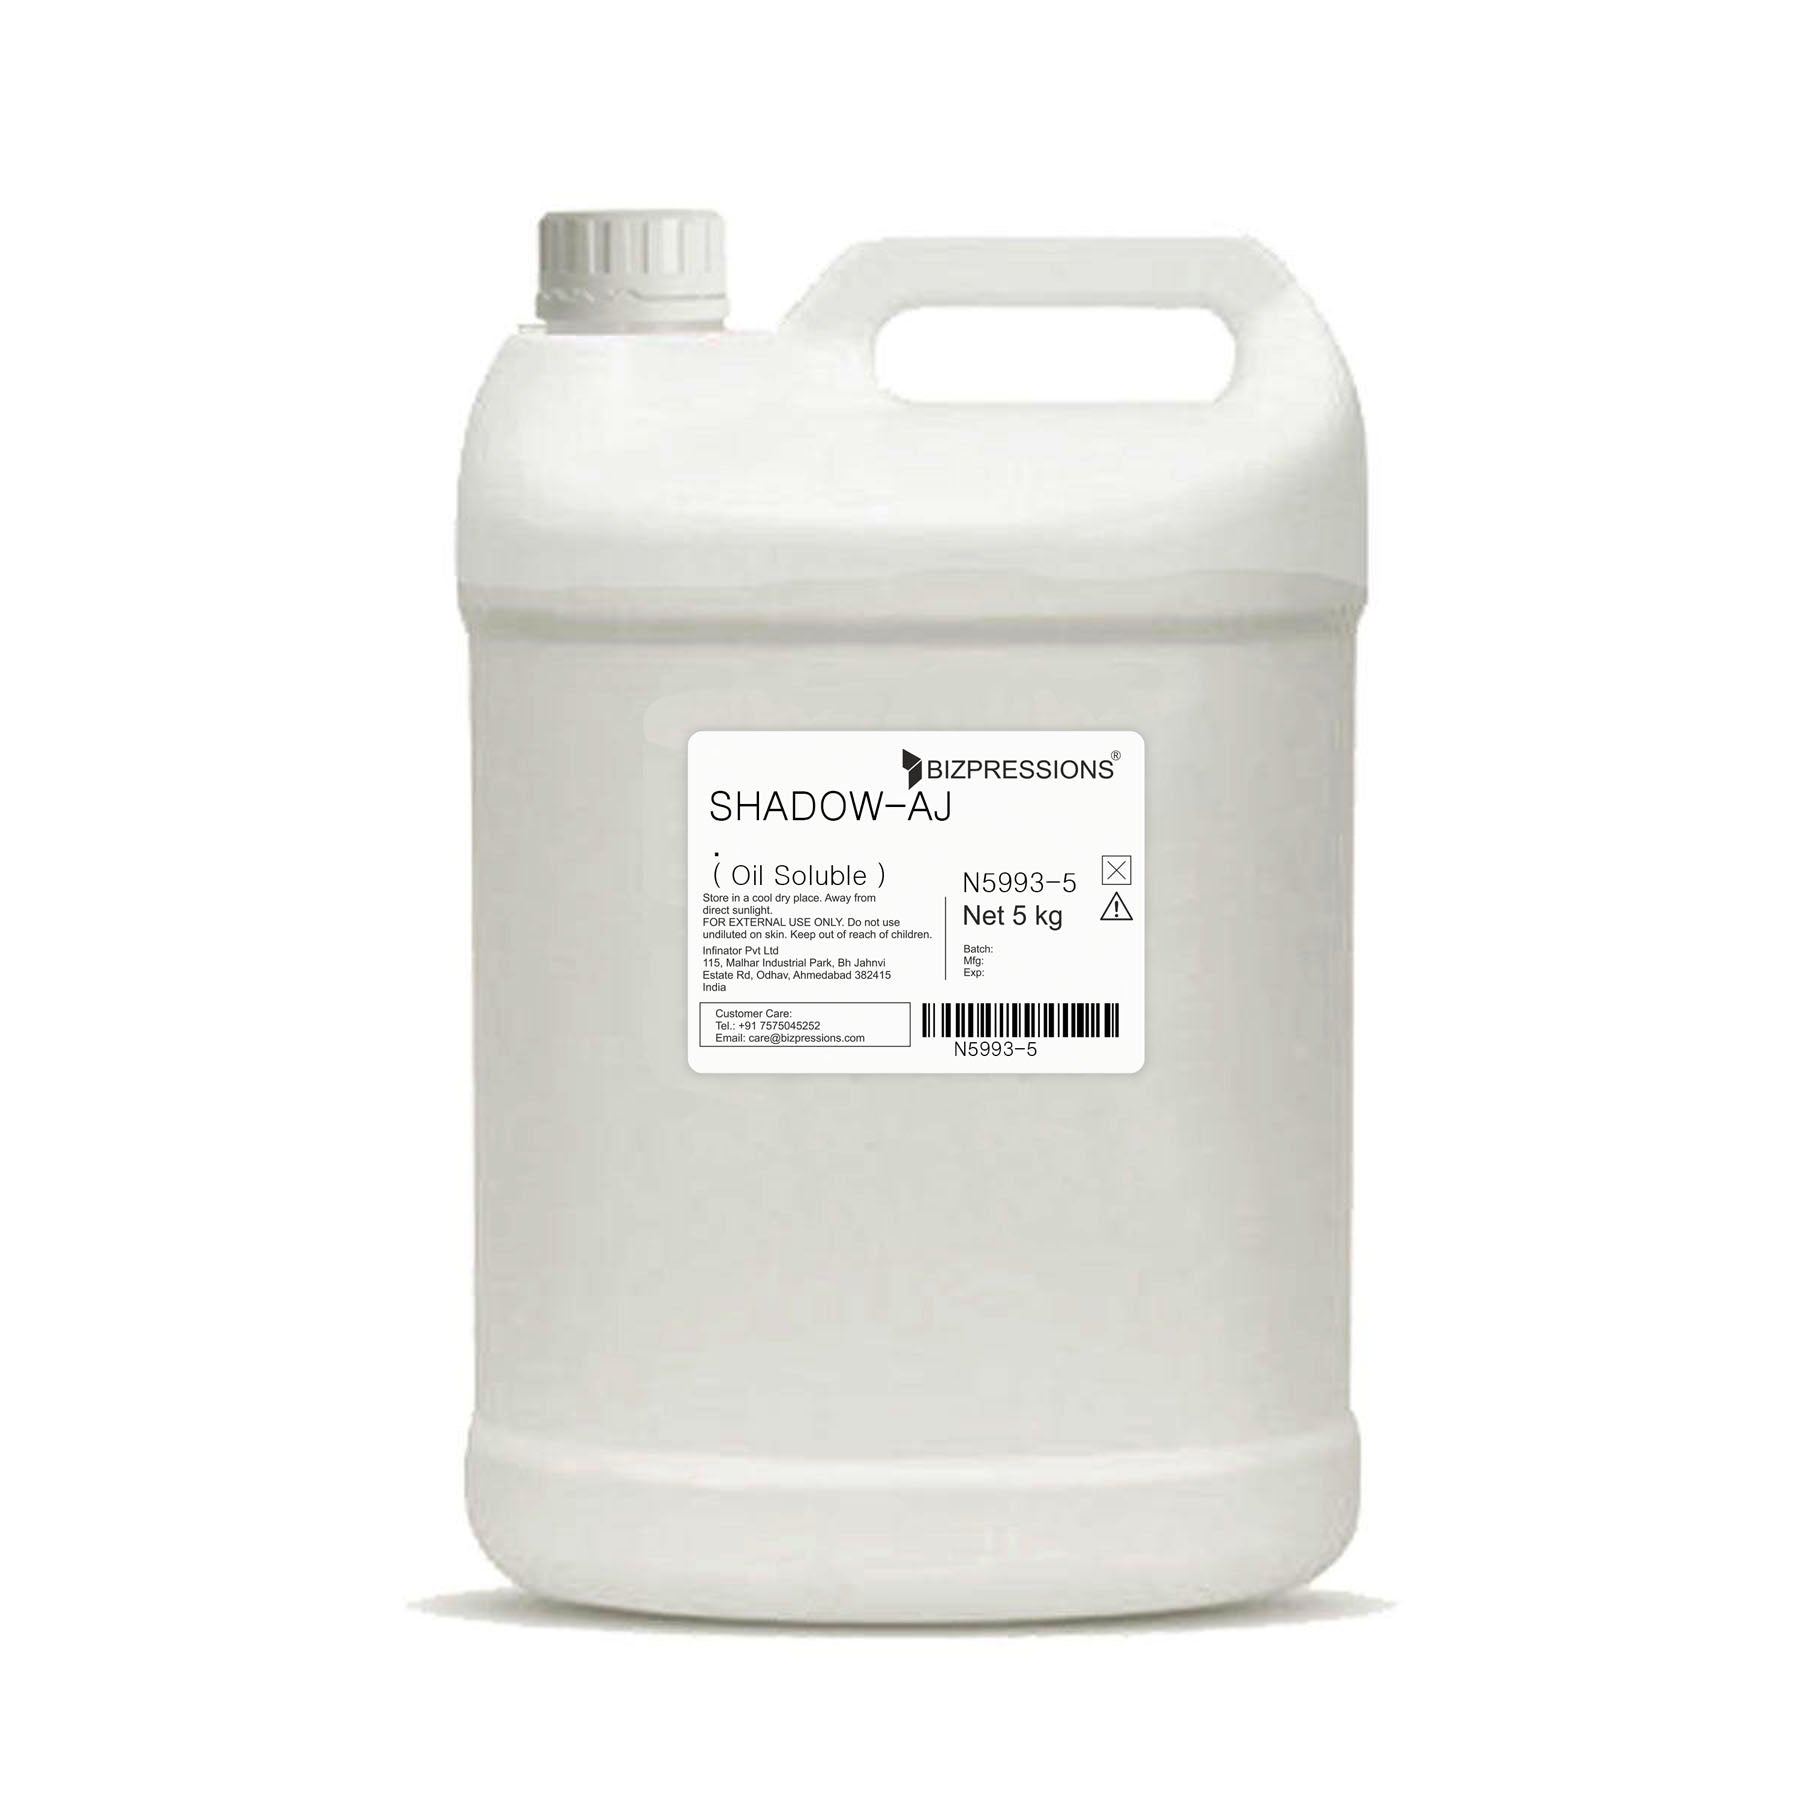 SHADOW-AJ - Fragrance ( Oil Soluble ) - 5 kg